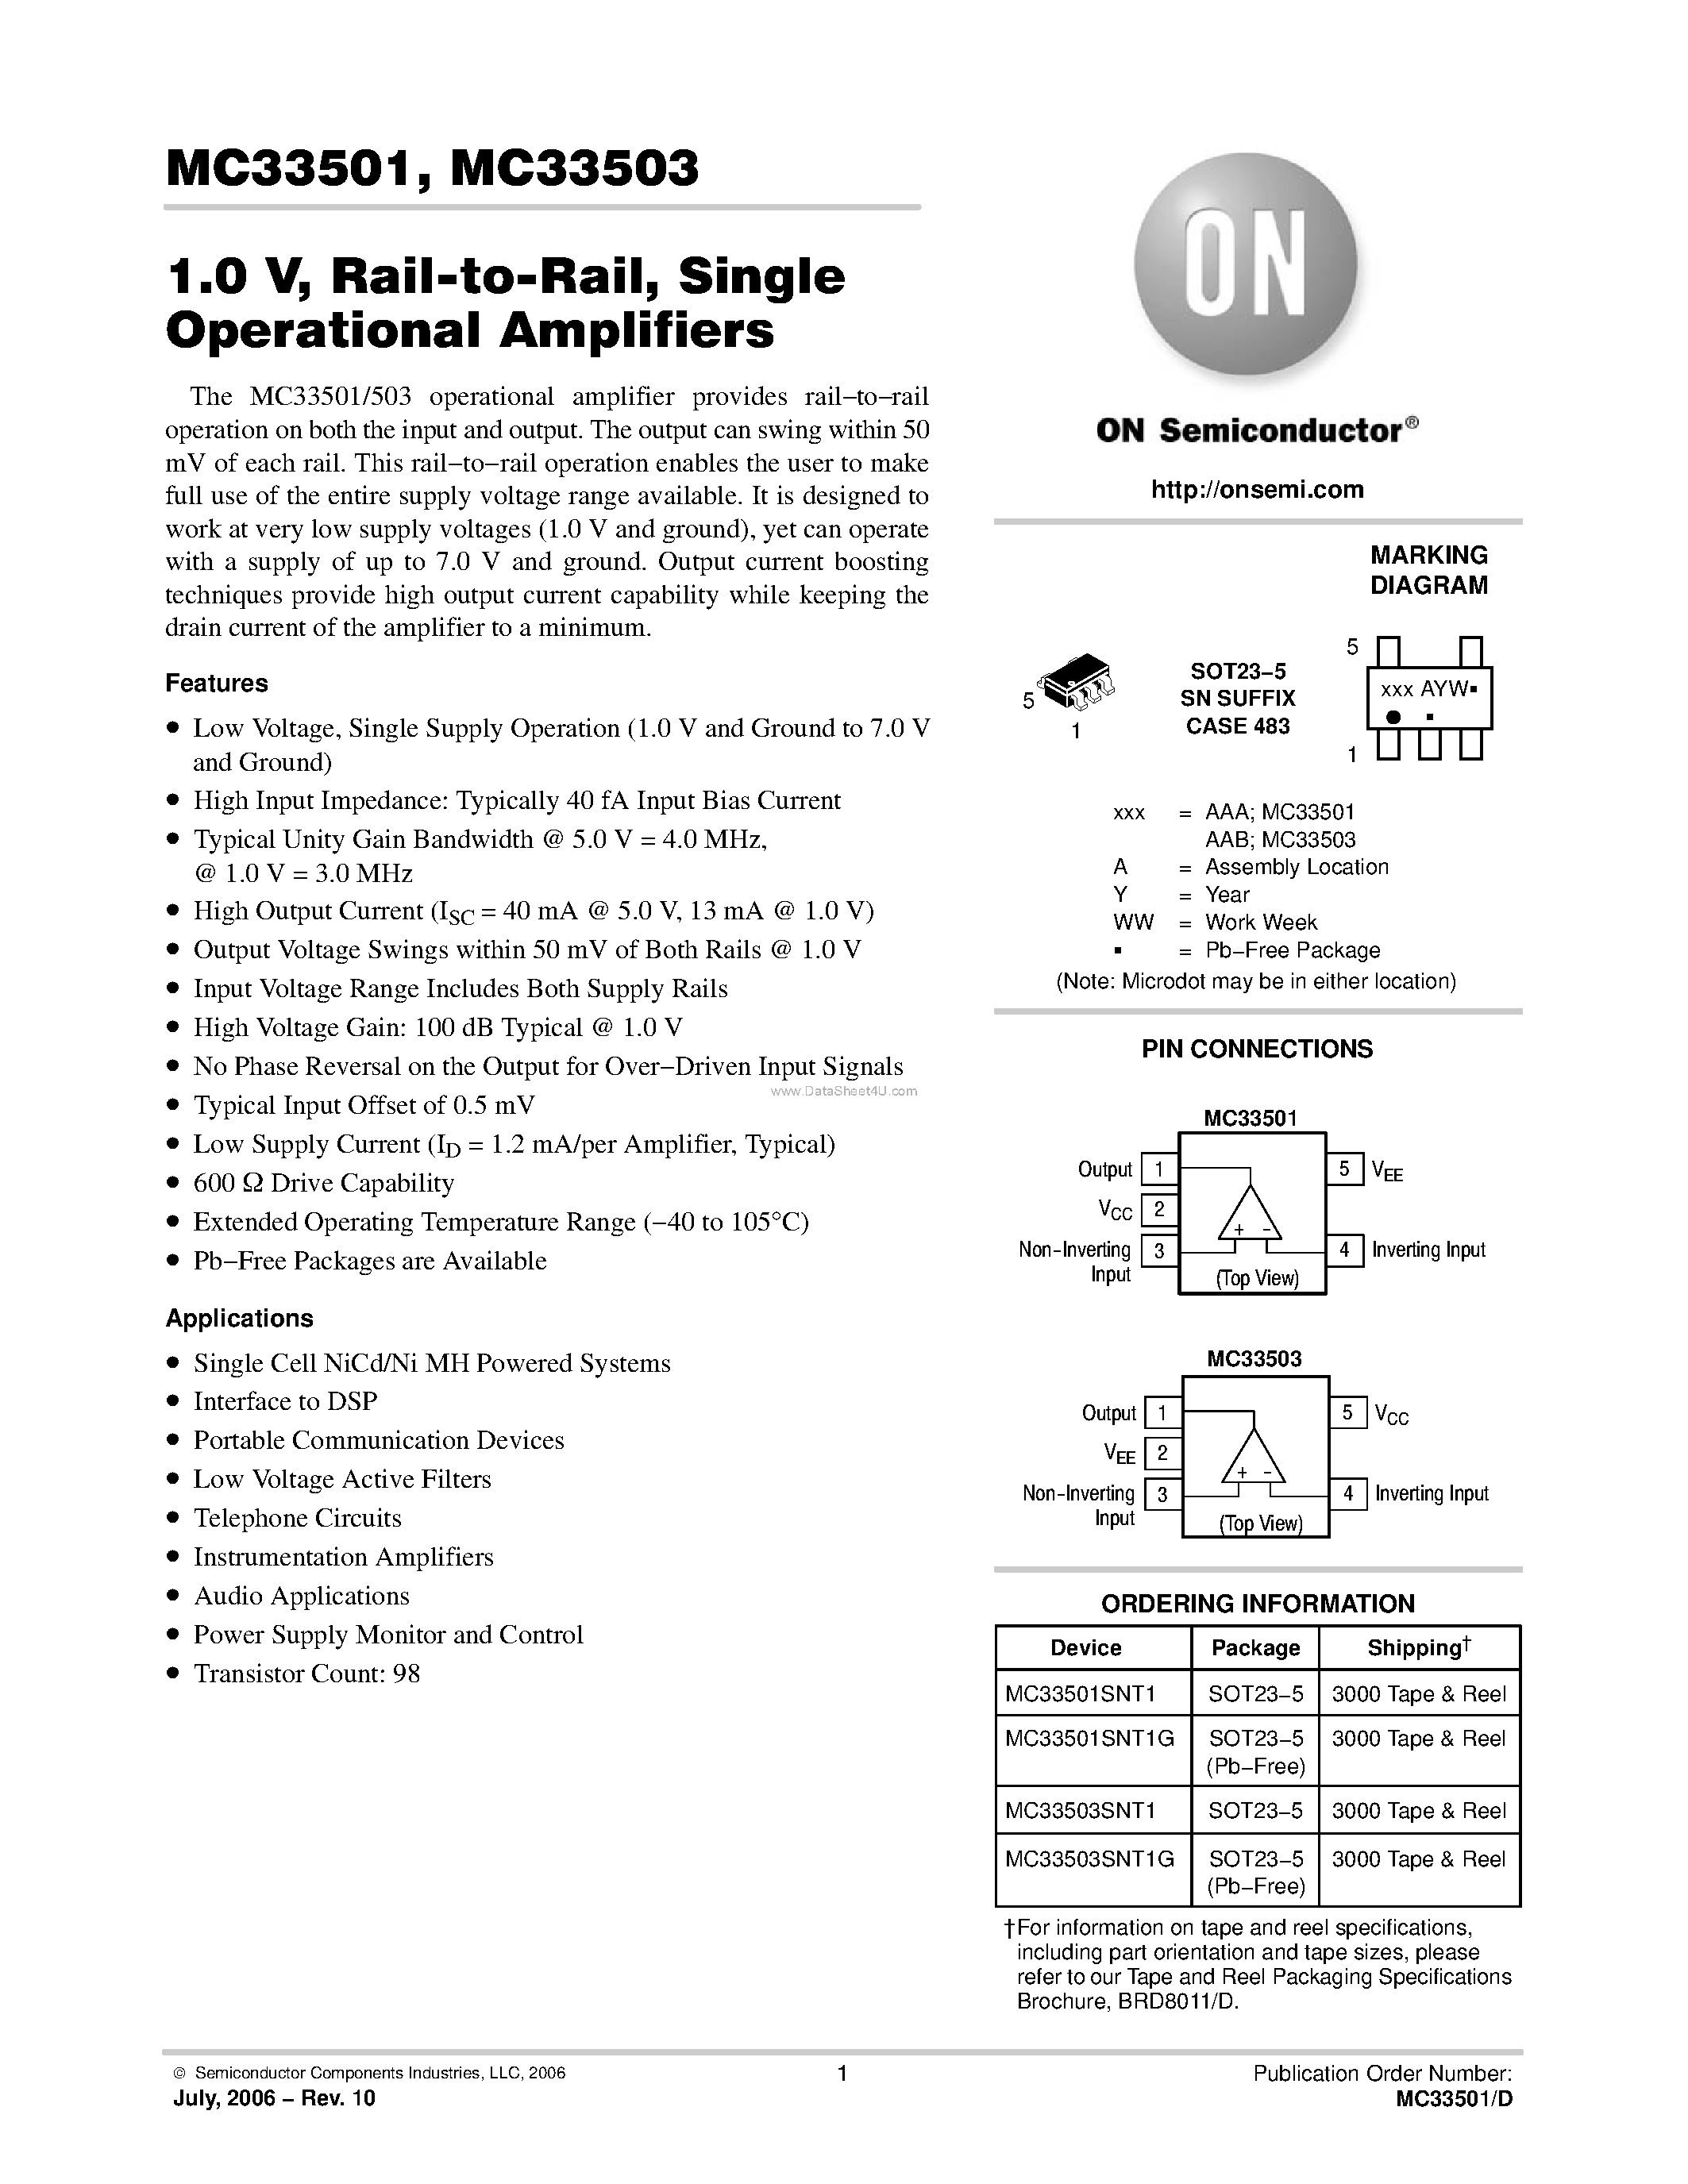 Даташит MC33501 - (MC33501 / MC33503) Single Operational Amplifiers страница 1